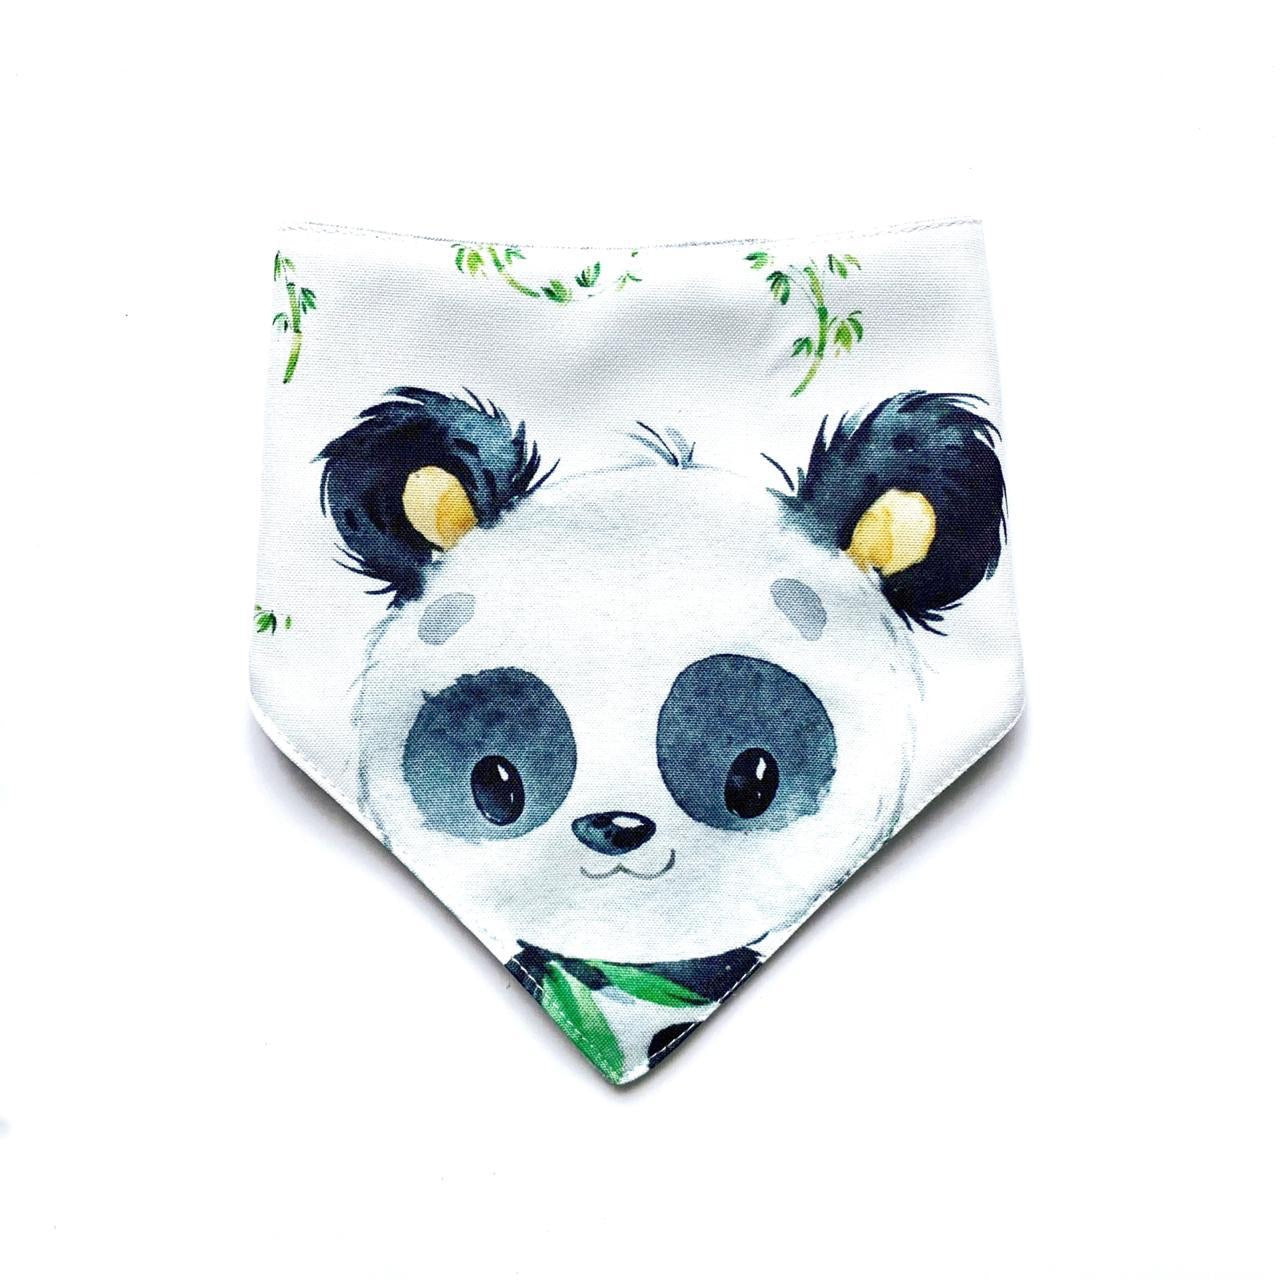 Watercolour - Po the Panda